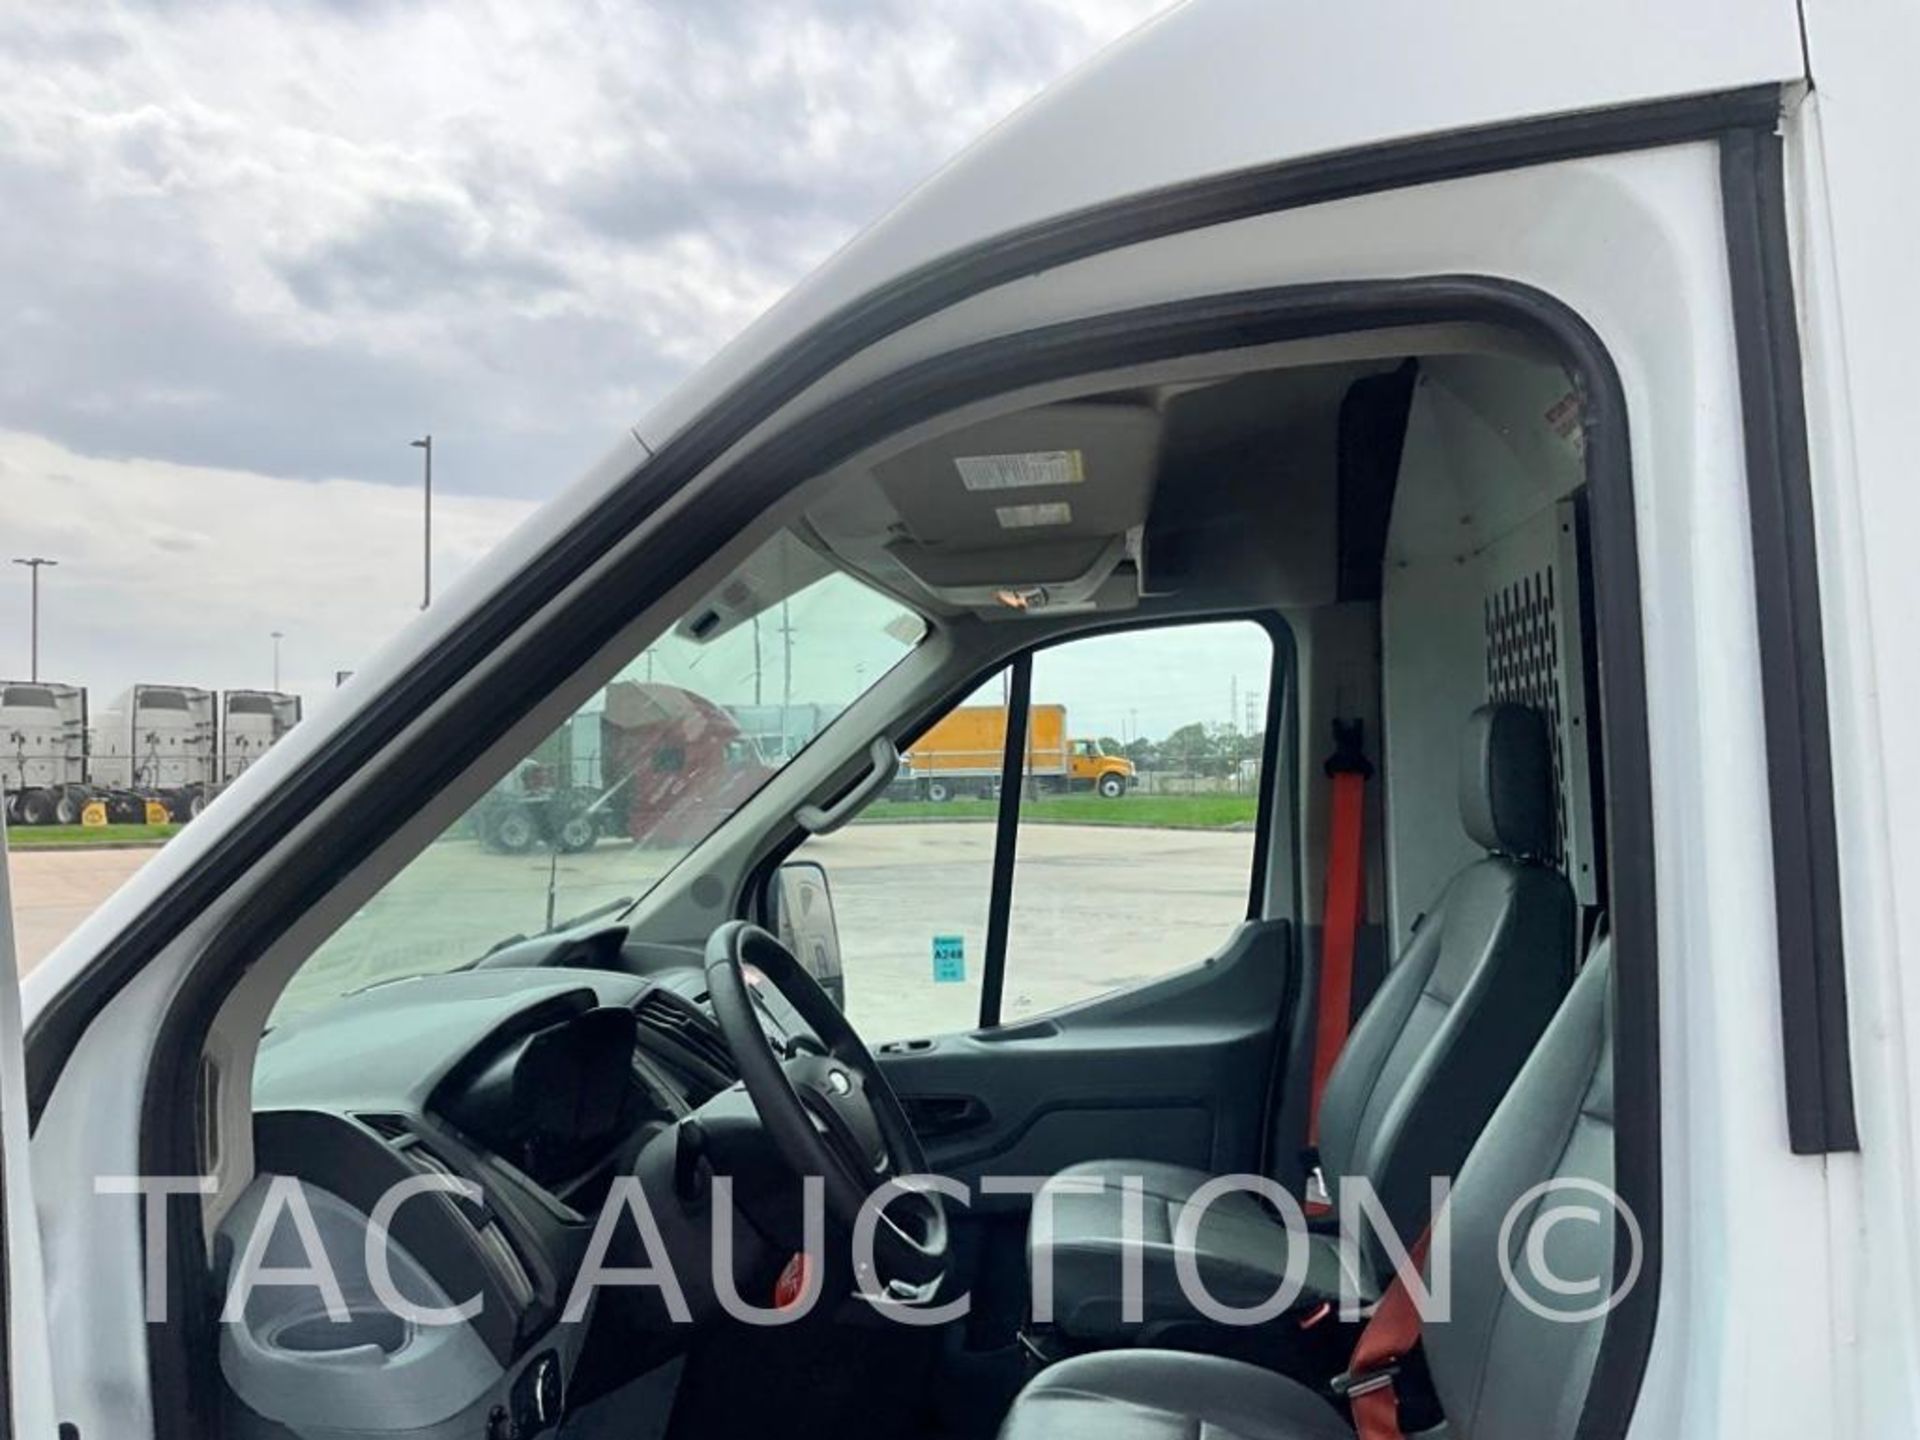 2019 Ford Transit 150 Cargo Van - Image 12 of 61